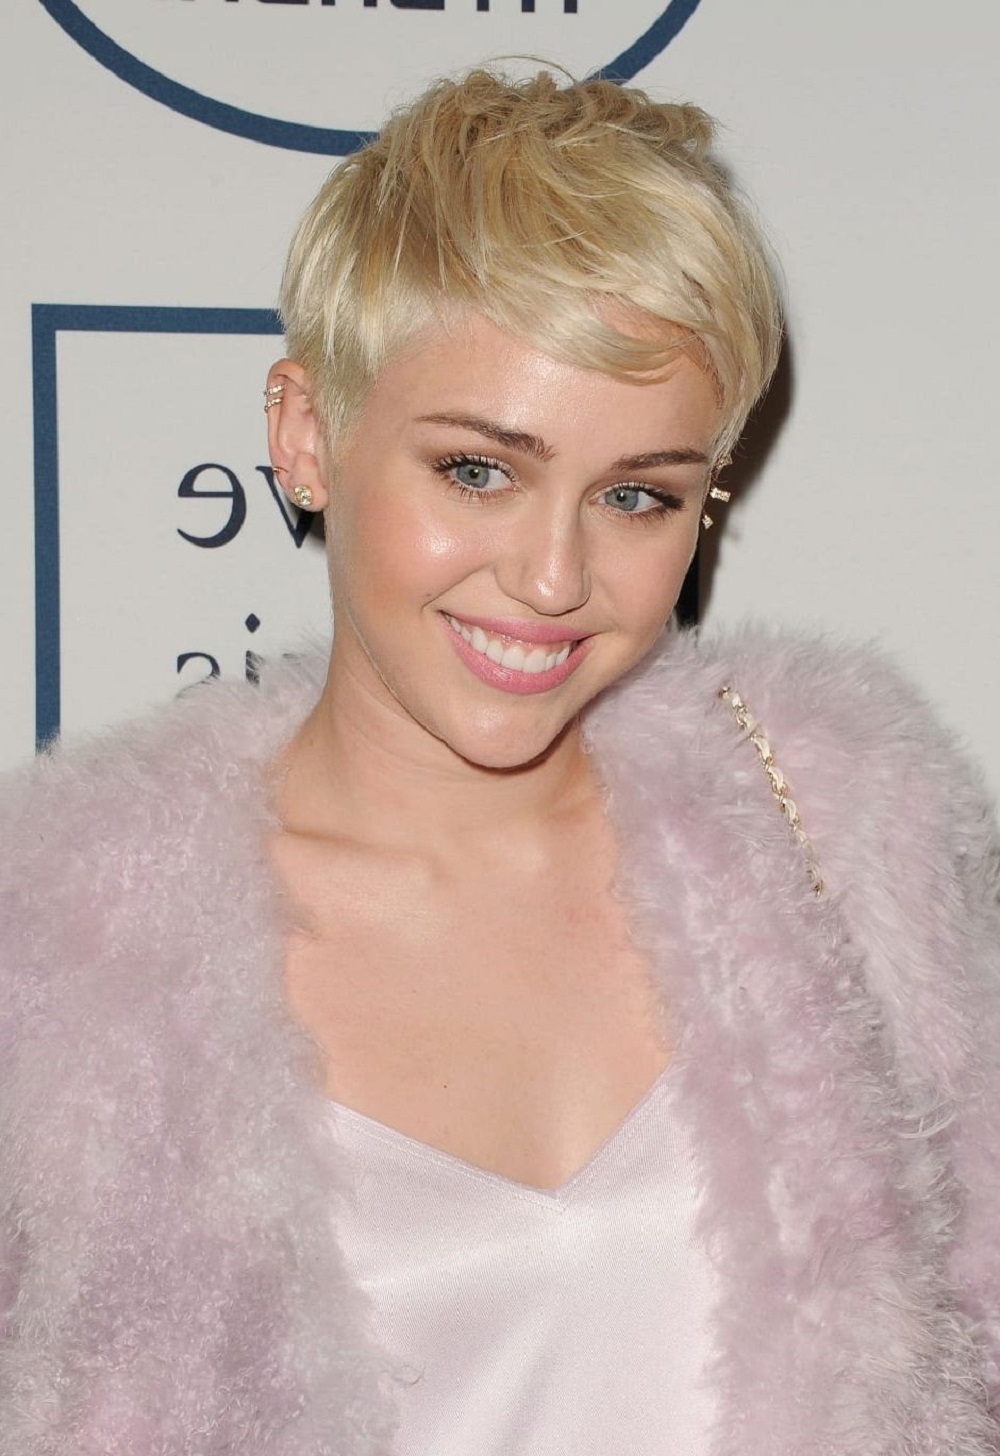 toc ngan 1 - Miley Cyrus: Từ công chúa Disney đến nữ hoàng nổi loạn